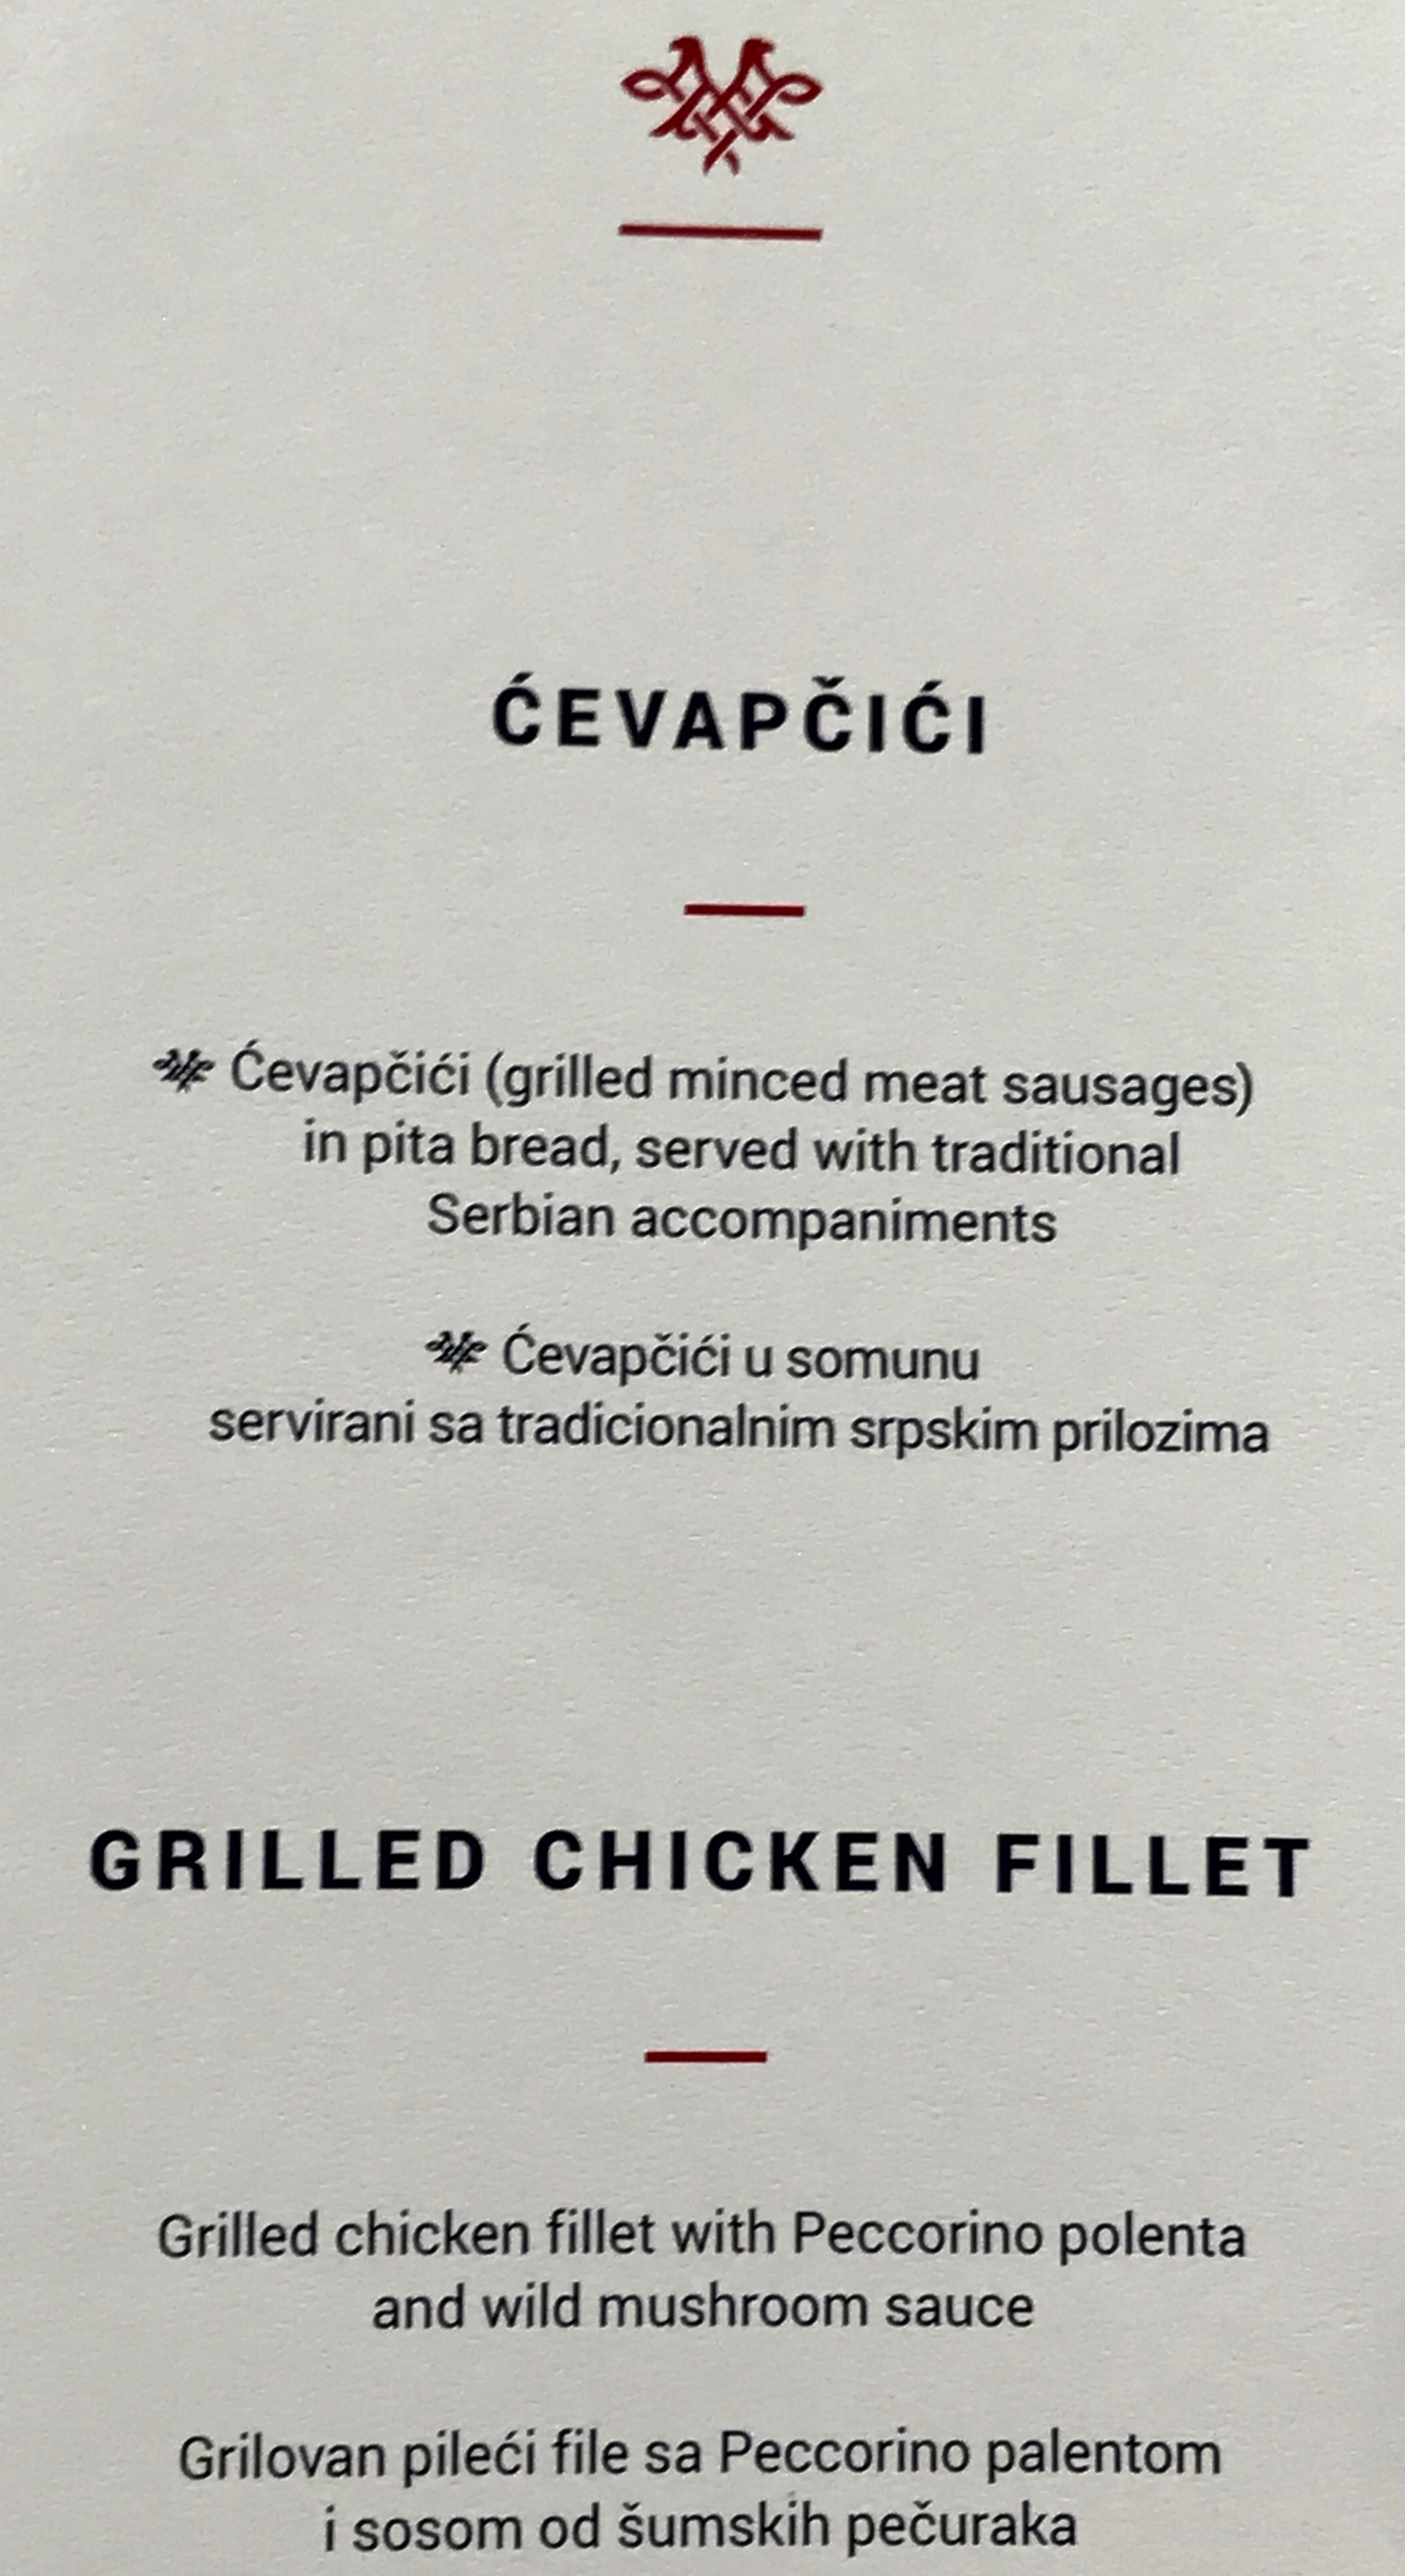 a close up of a menu